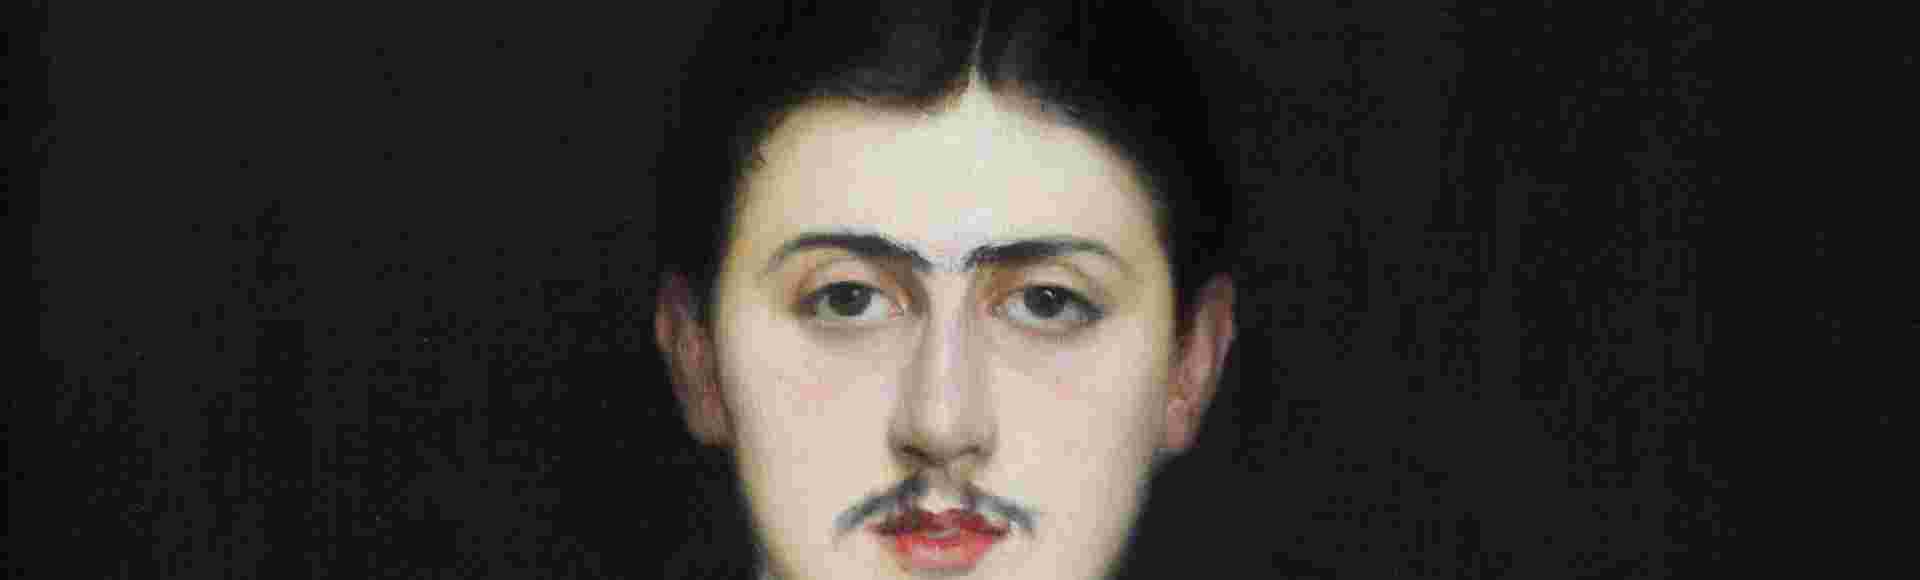 Portrait of Marcel Proust by Jacques-Emile Blanche.